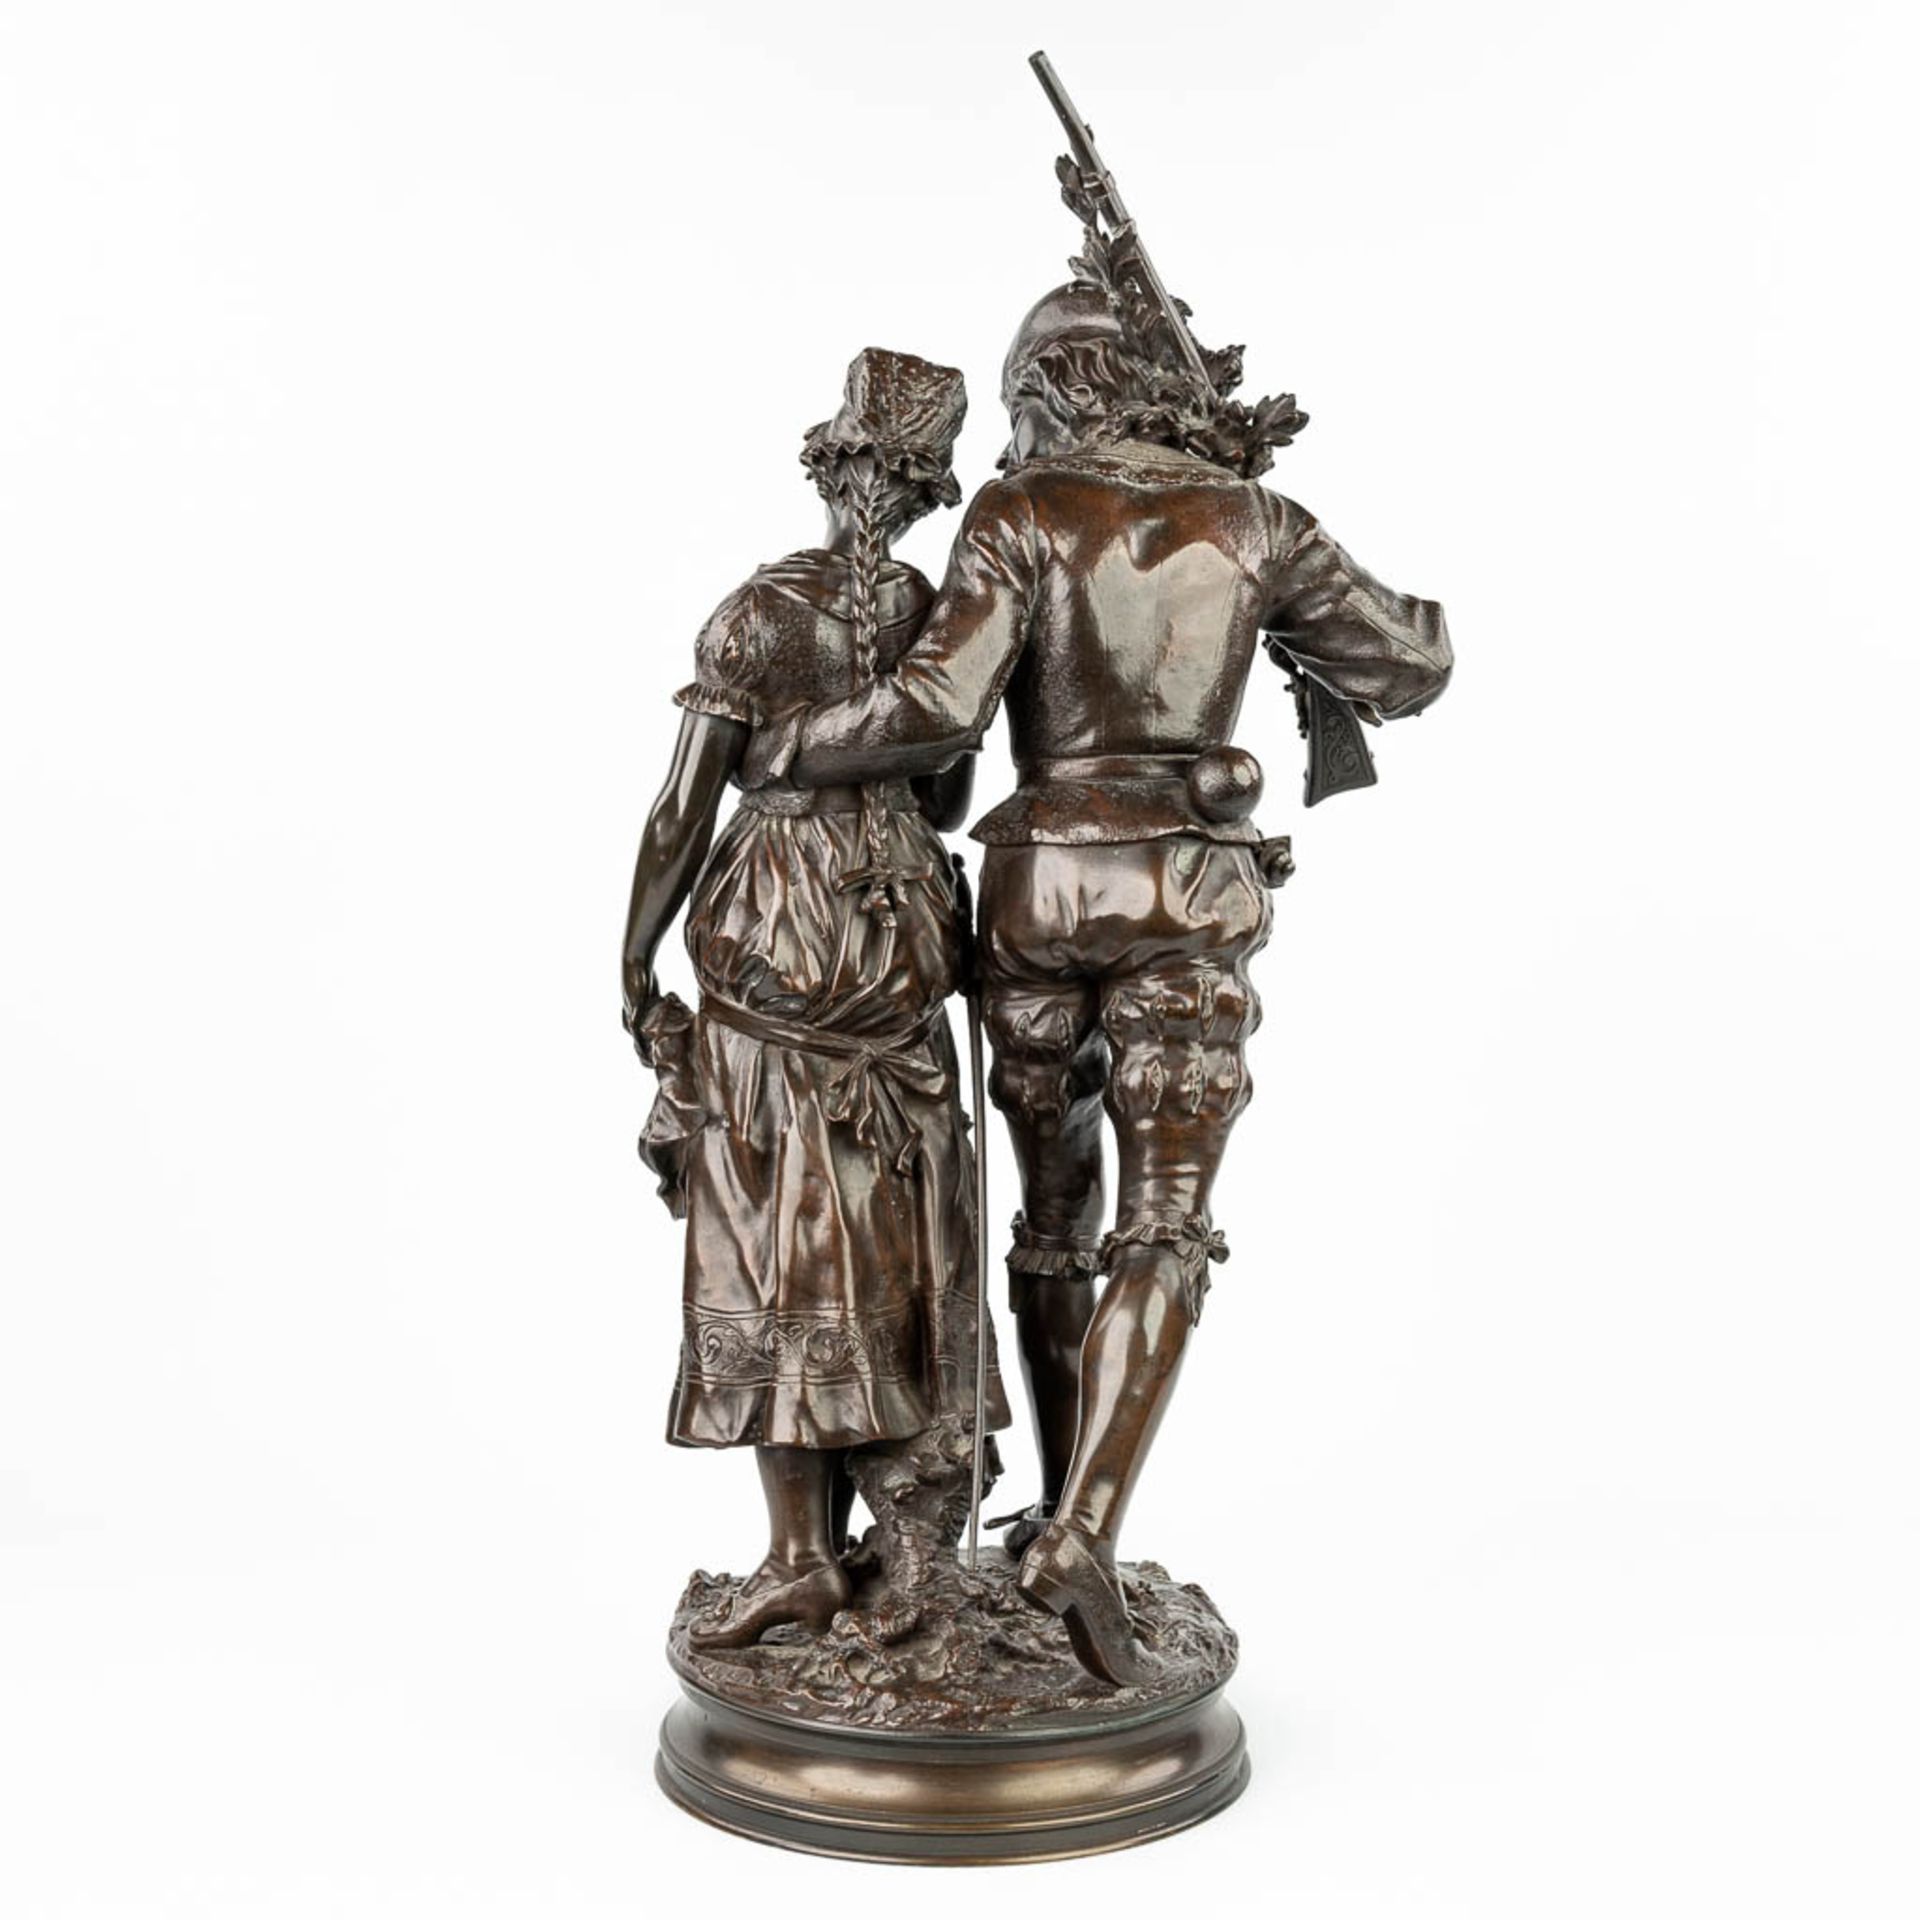 Adrien Etienne GAUDEZ (1845-1902) 'Retour de Chasse' a bronze statue on a revolving base. (H:72cm) - Image 10 of 15